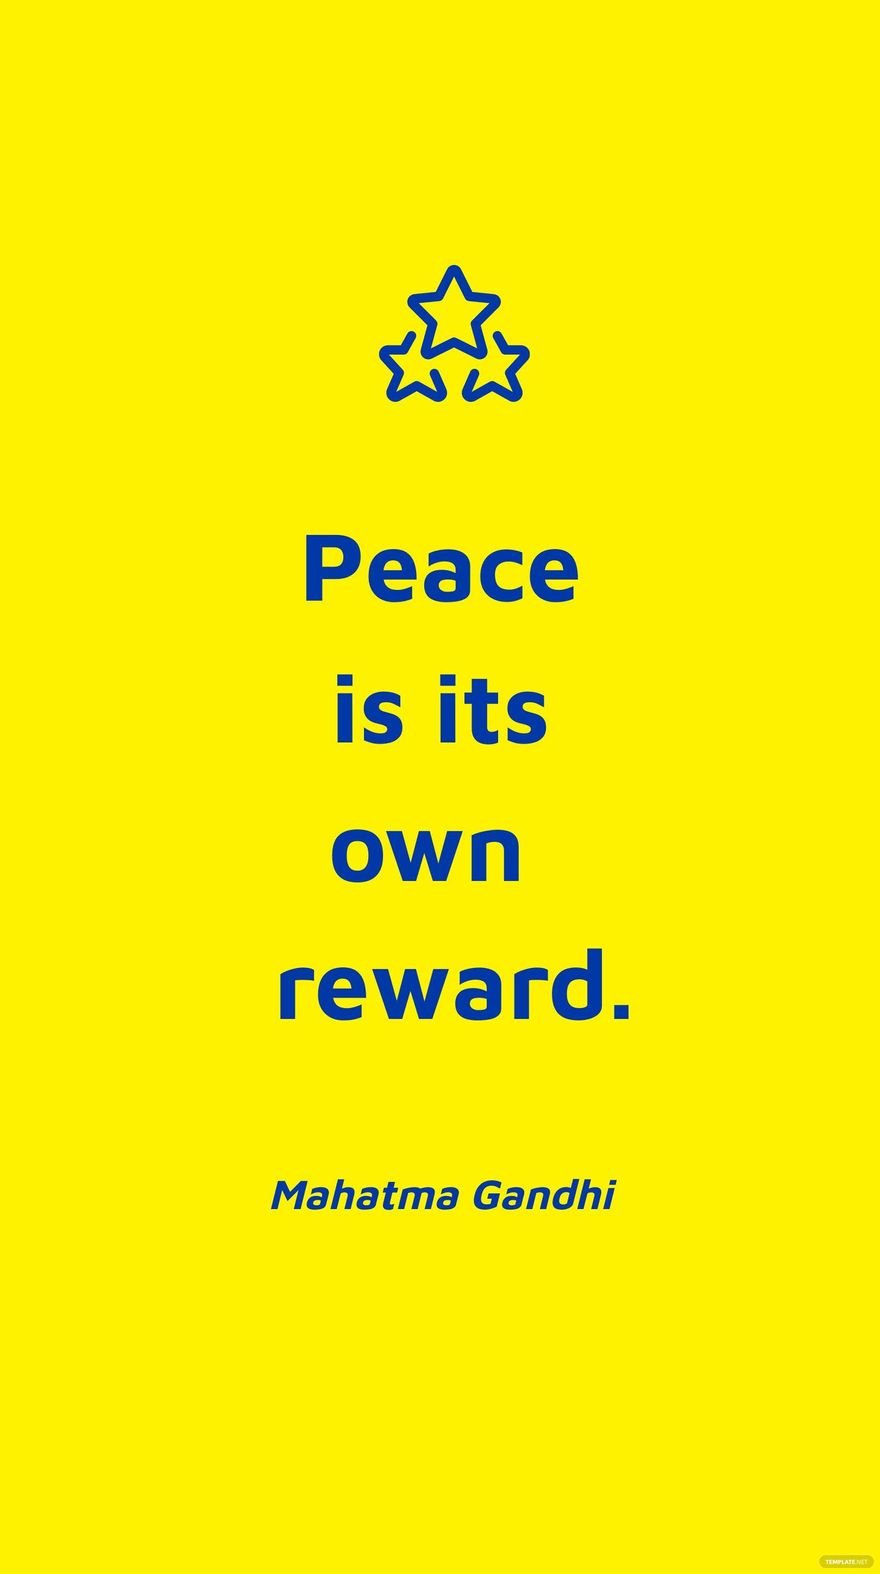 Free Mahatma Gandhi - Peace is its own reward. in JPG